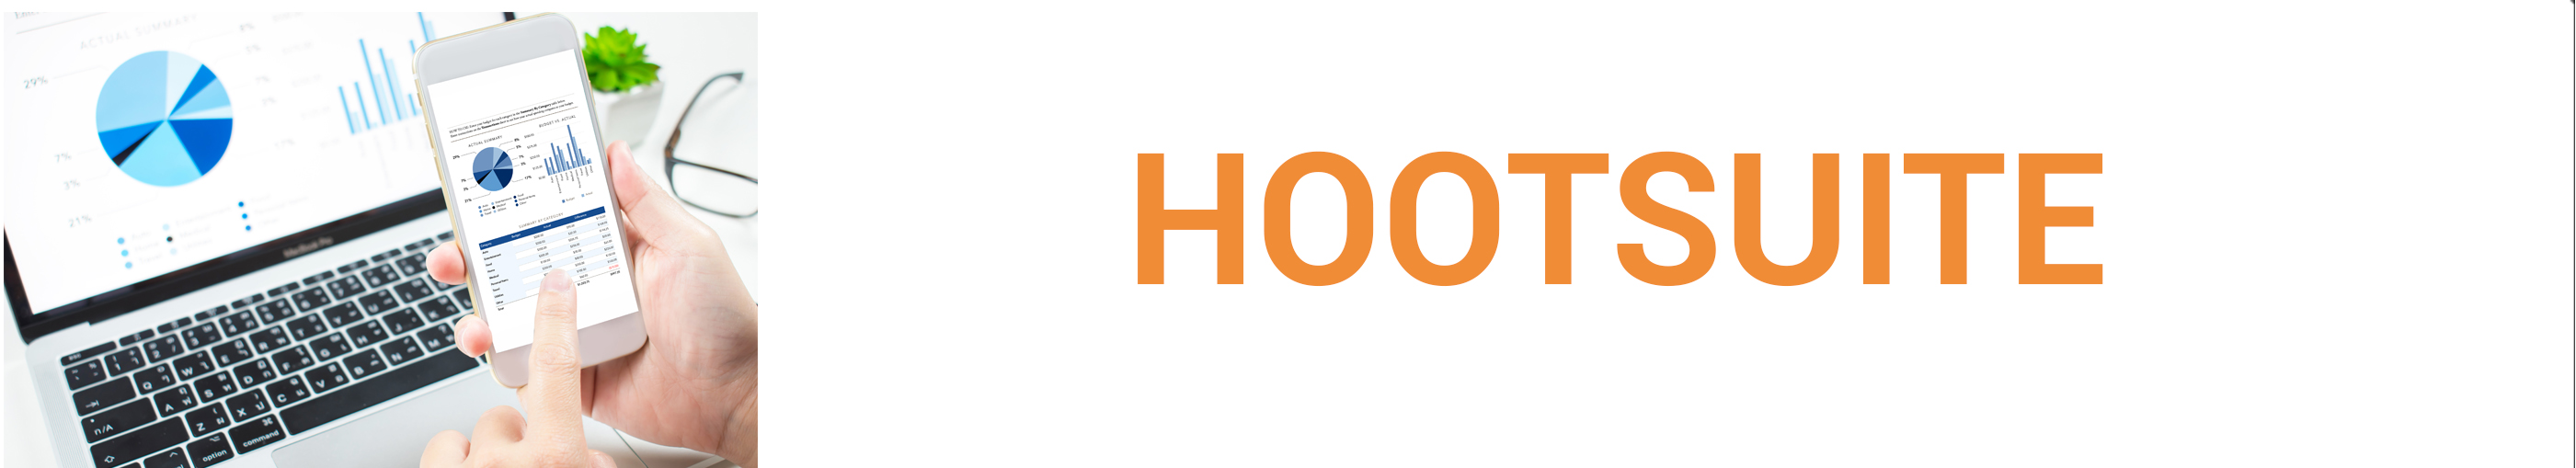 Hootsuite - STAAH Blog